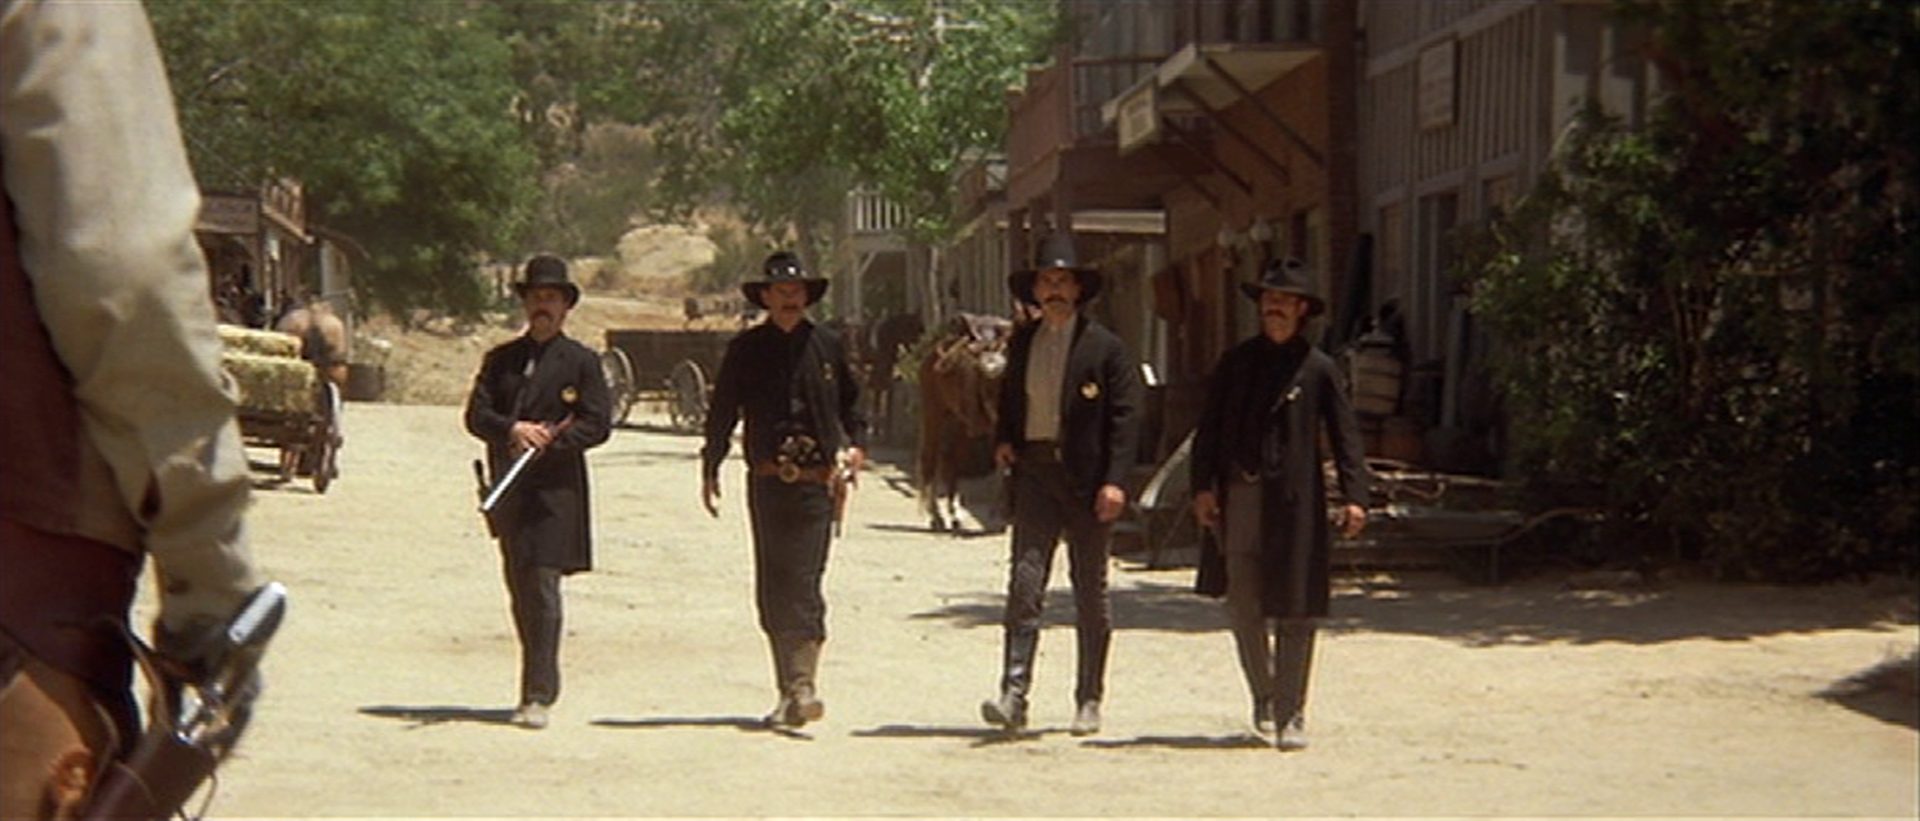 Blick auf vier schwarz gekleidete Männer mitten auf der staubigen Hauptstraße einer Westernkleinstadt.